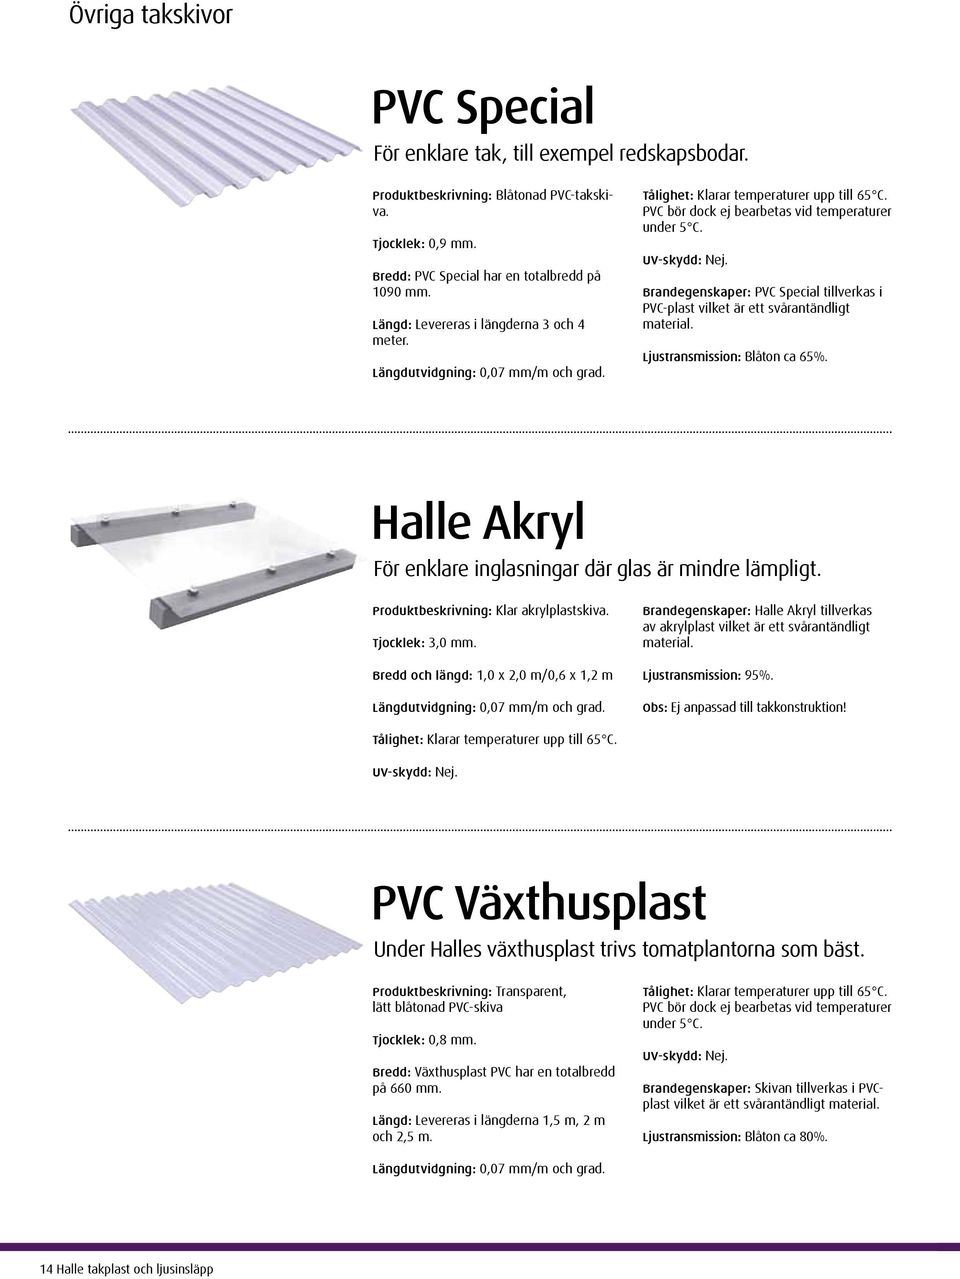 Brandegenskaper: PVC Special tillverkas i PVC-plast vilket är ett svårantändligt material. Ljustransmission: Blåton ca 65%. Halle Akryl För enklare inglasningar där glas är mindre lämpligt.